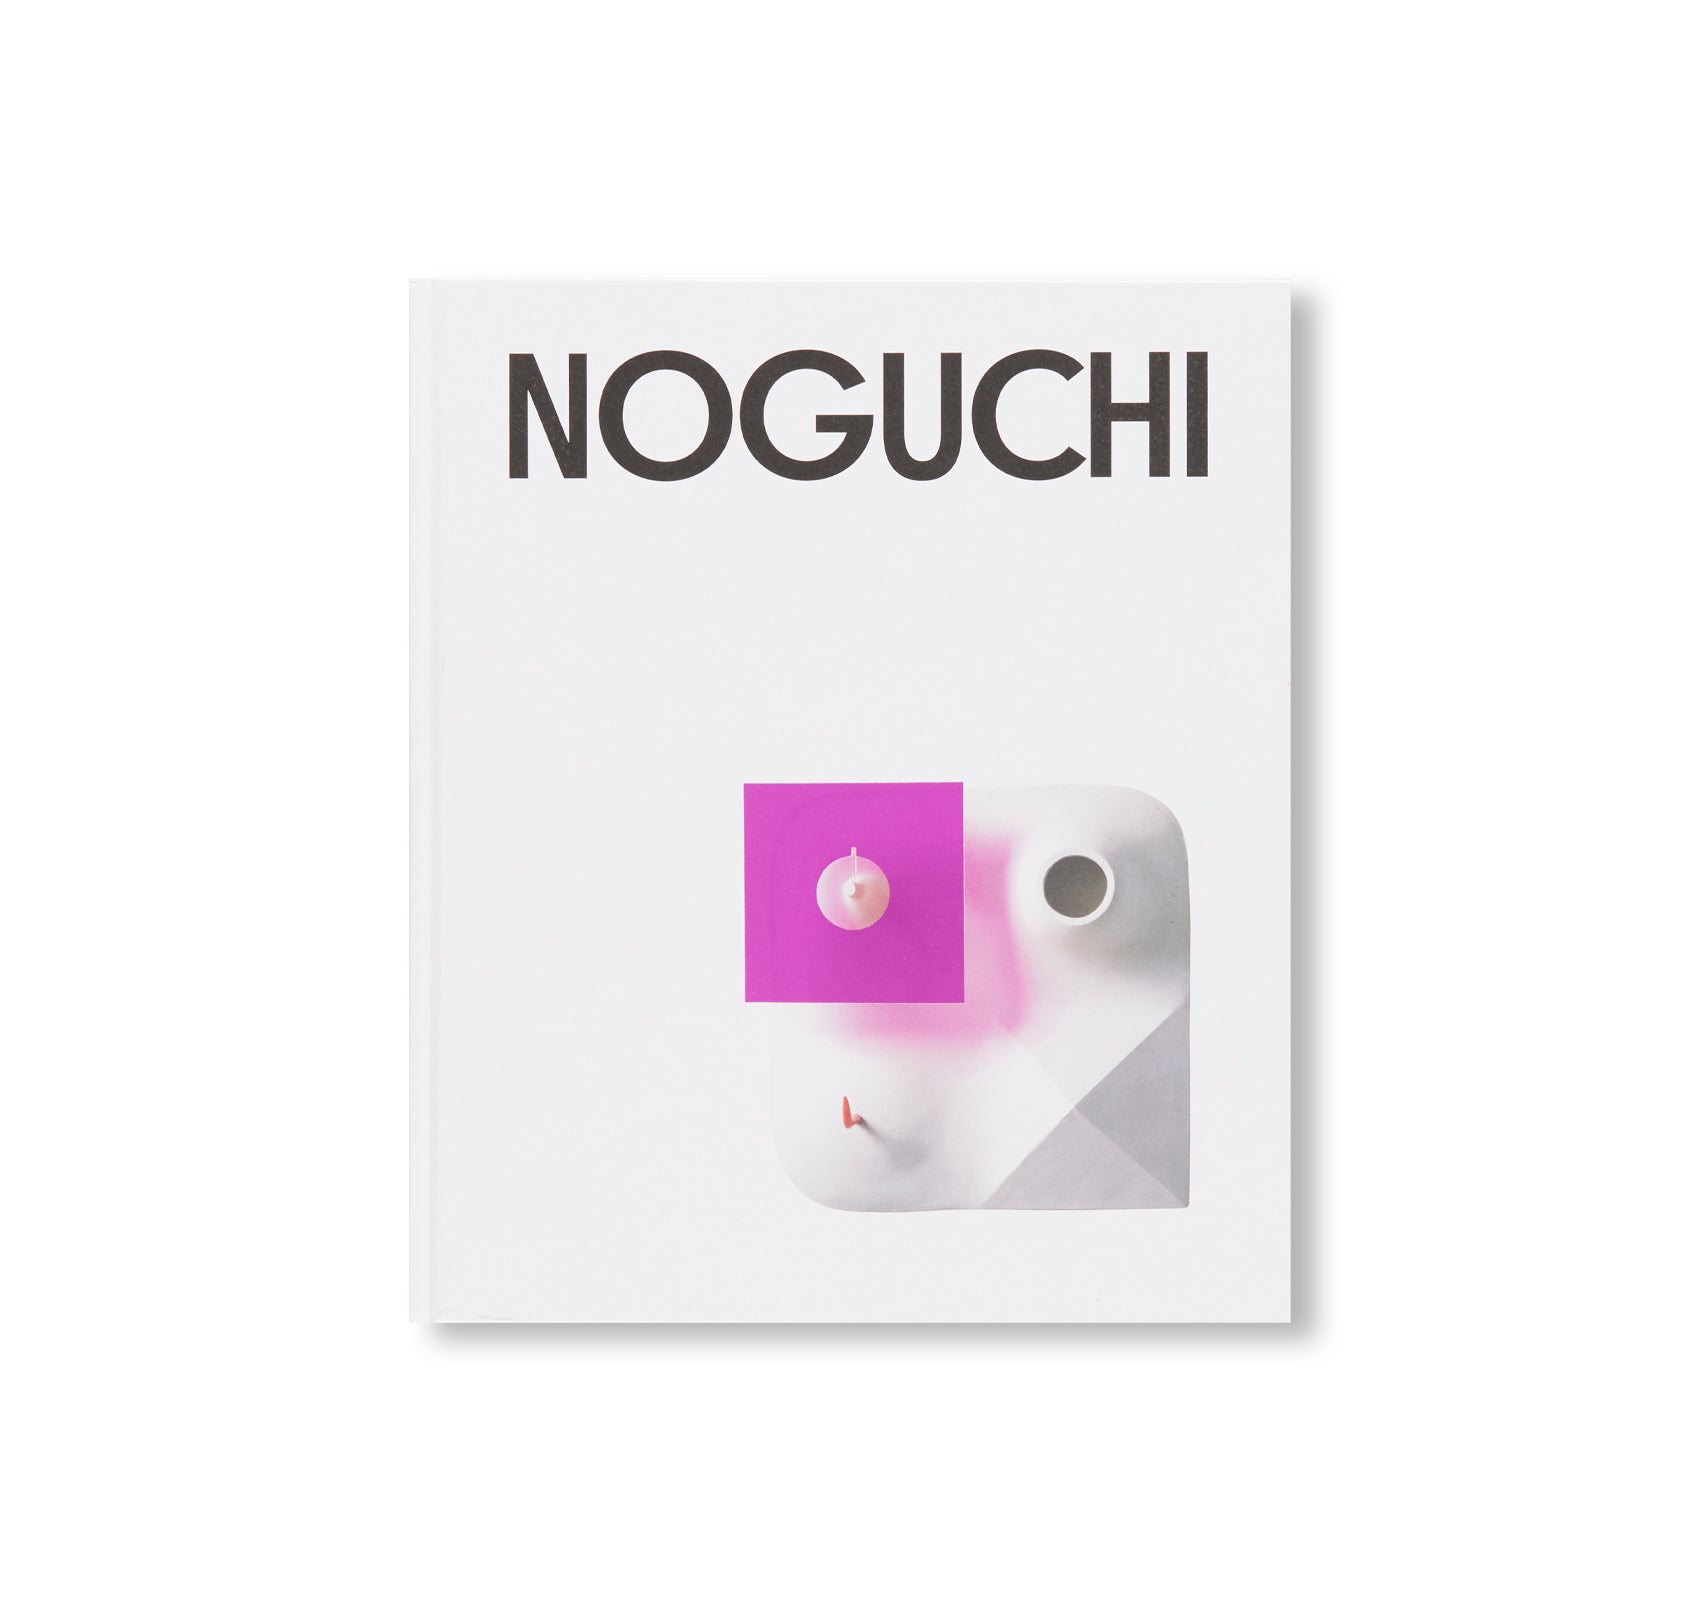 ISAMU NOGUCHI by Isamu Noguchi [SOFTCOVER] – twelvebooks